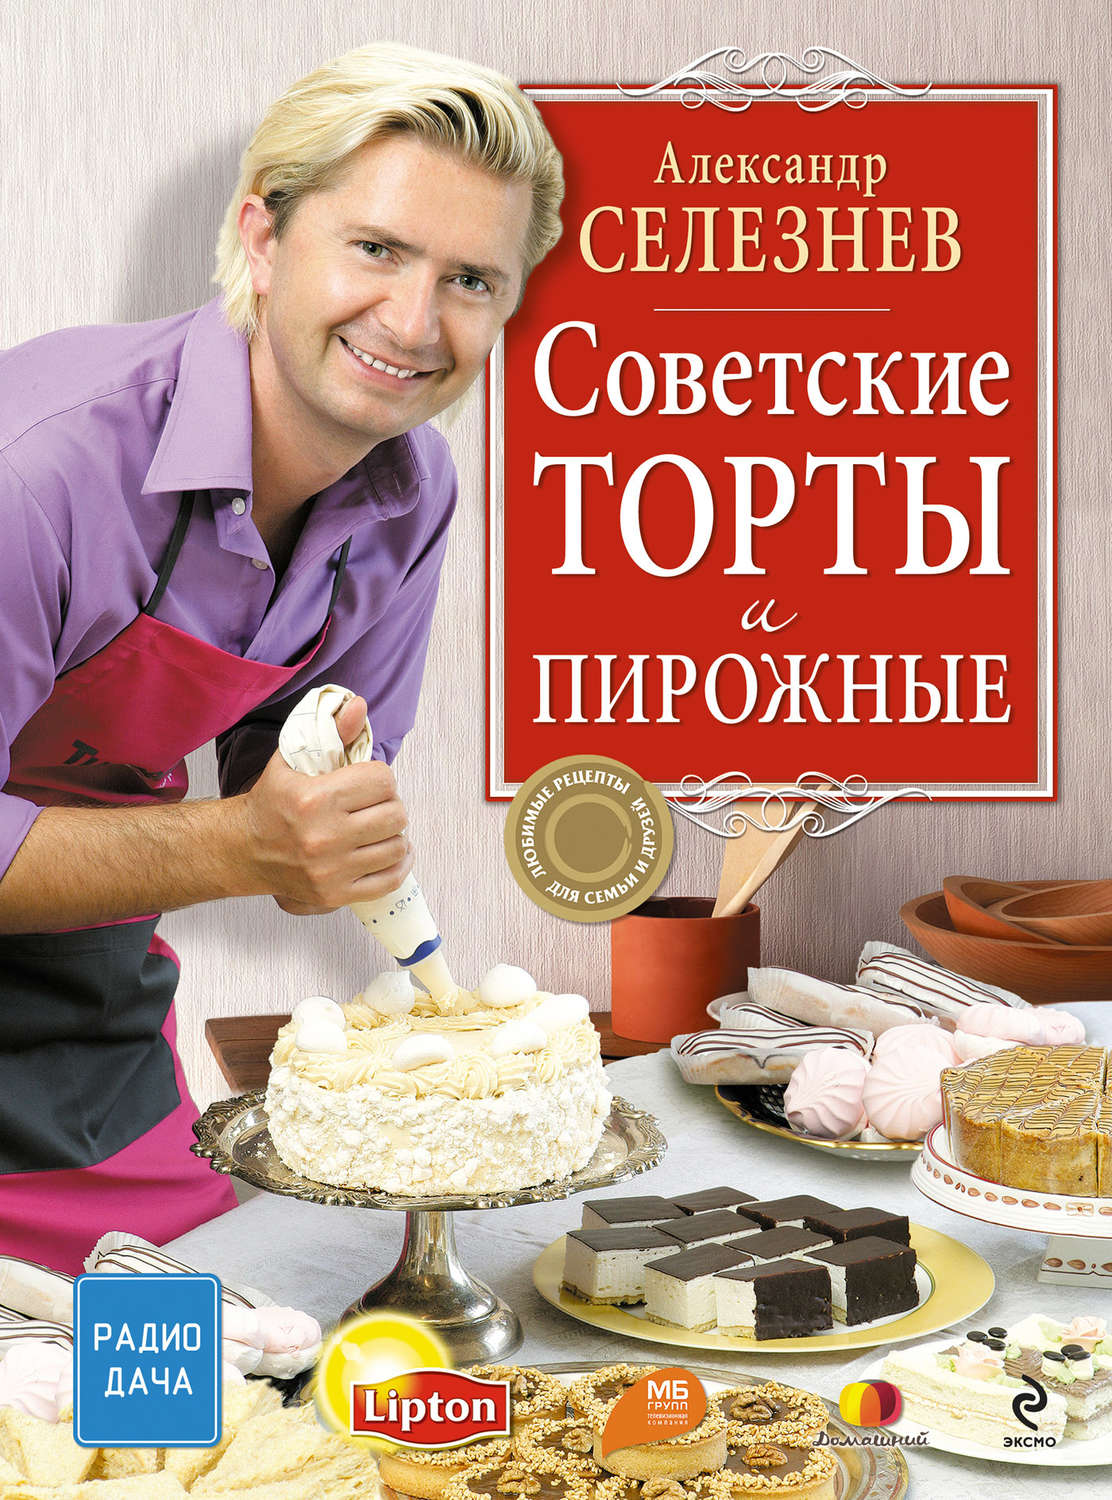 Торты Советского Времени Рецепты С Фото